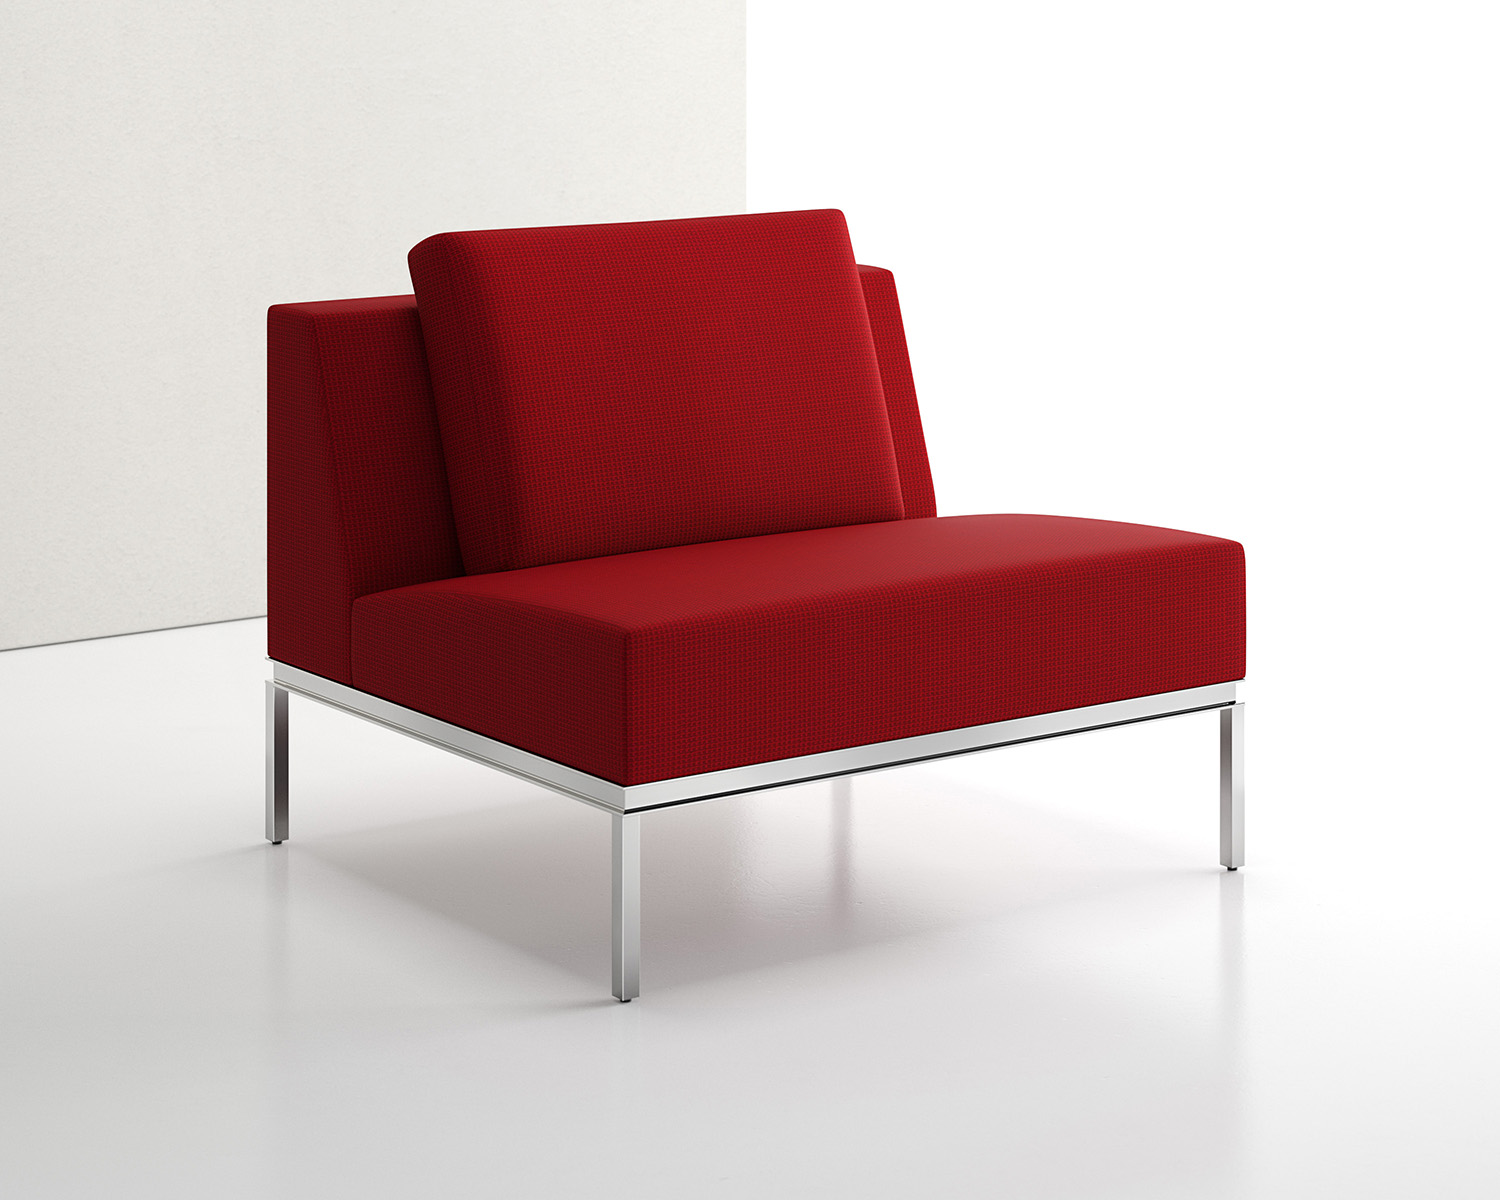 1482-1003-1002 (Brian Graham - Lounge Chair Armless).jpg